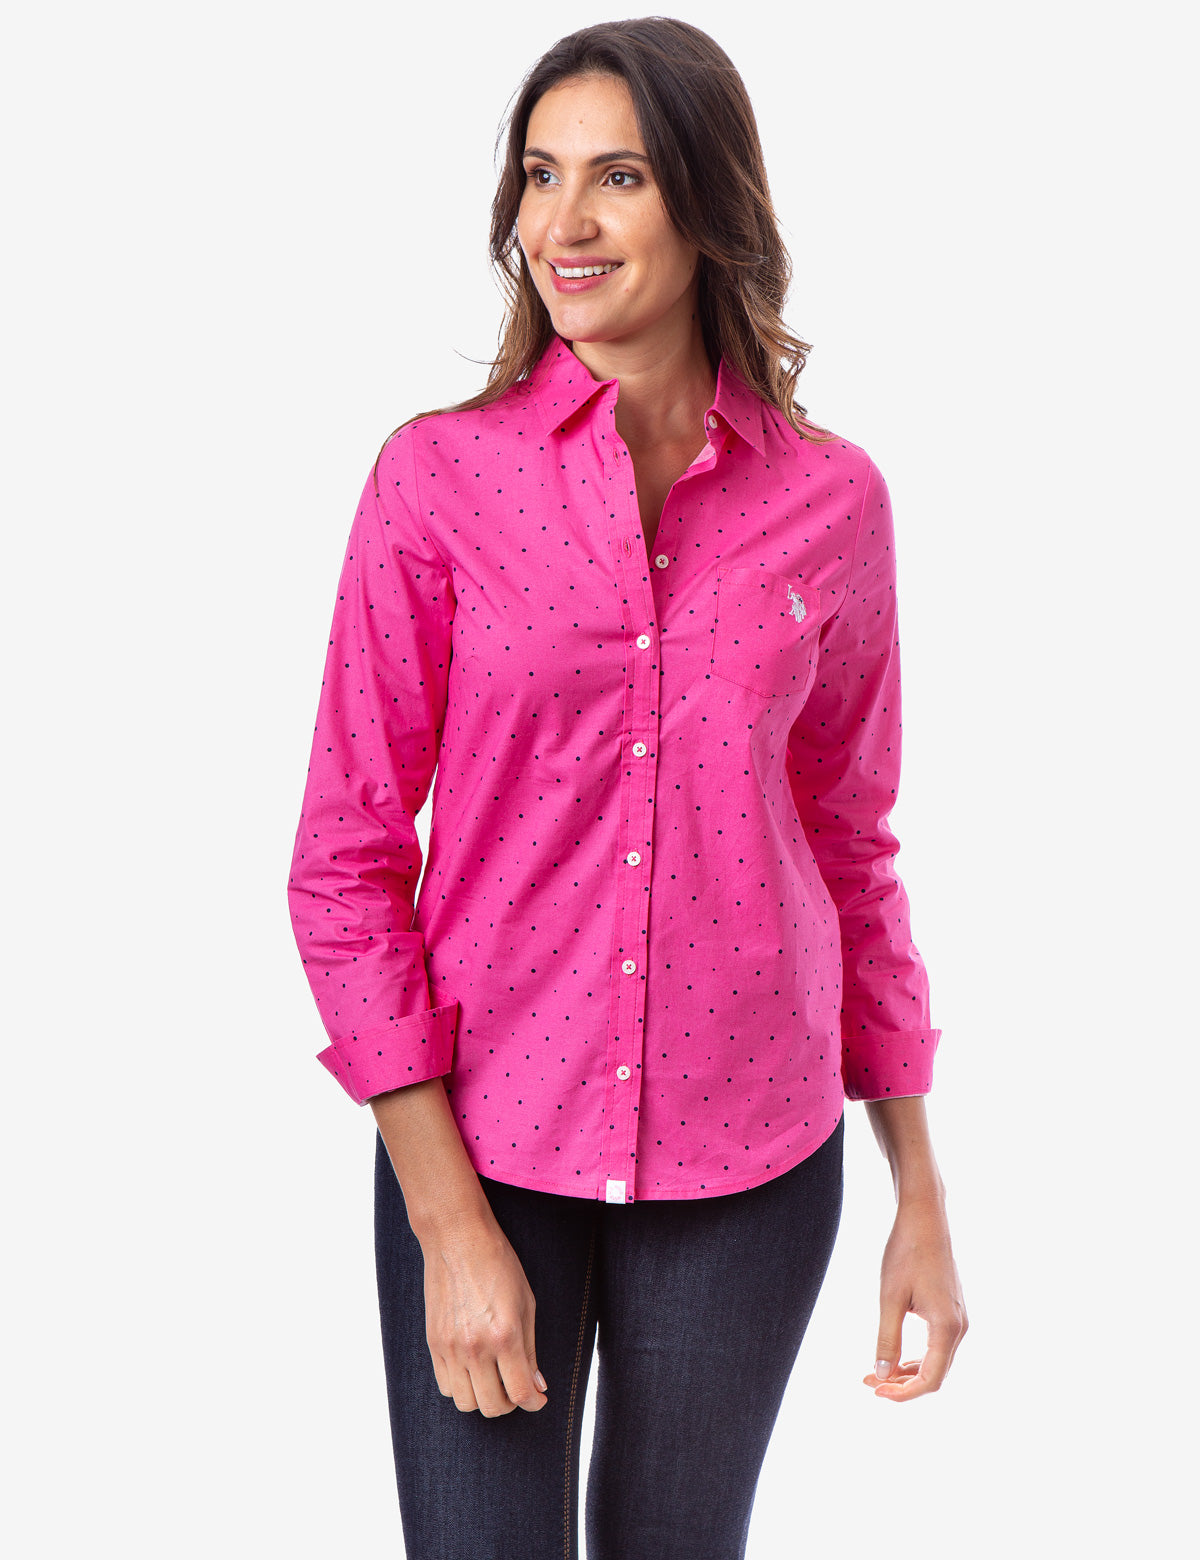 pink long sleeve shirt womens